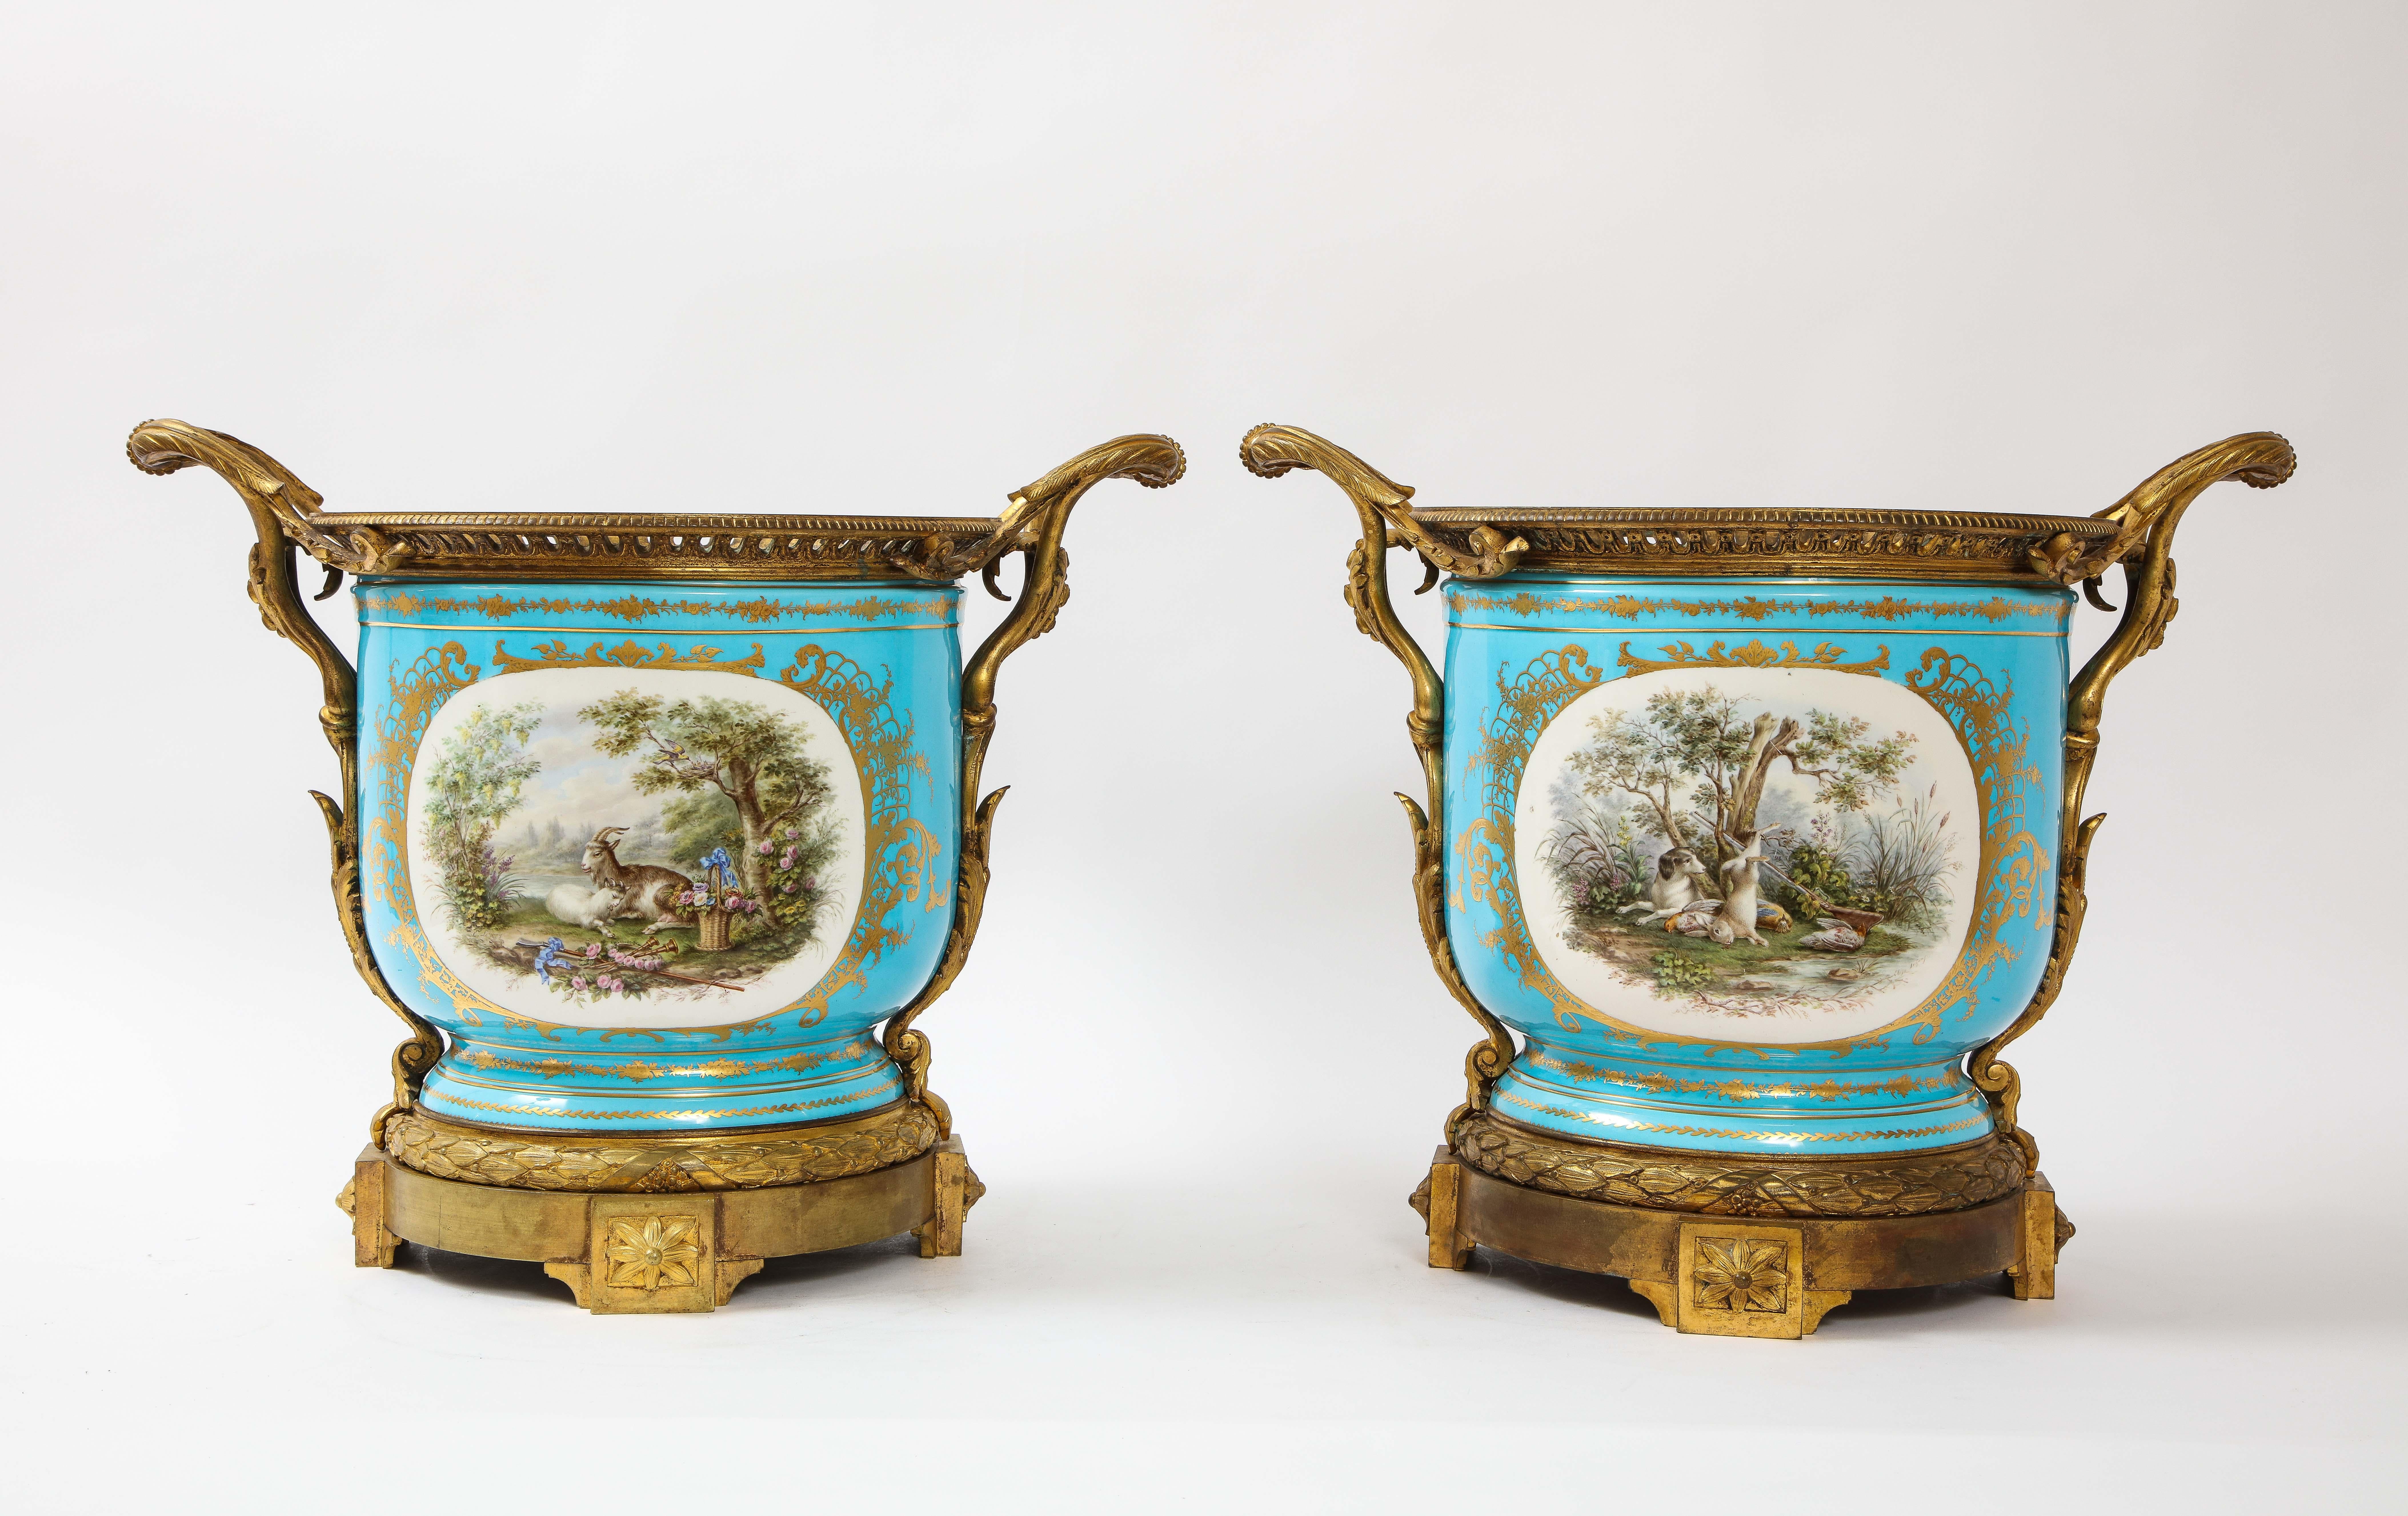 Ein monumentales und seltenes Paar französischer Übertöpfe aus blauem Sèvres-Porzellan aus dem 19. Jahrhundert, in Bronze gefasst. Diese Übertöpfe sind in dieser monumentalen Größe äußerst selten zu finden. Jedes ist handbemalt in einem himmelblauen